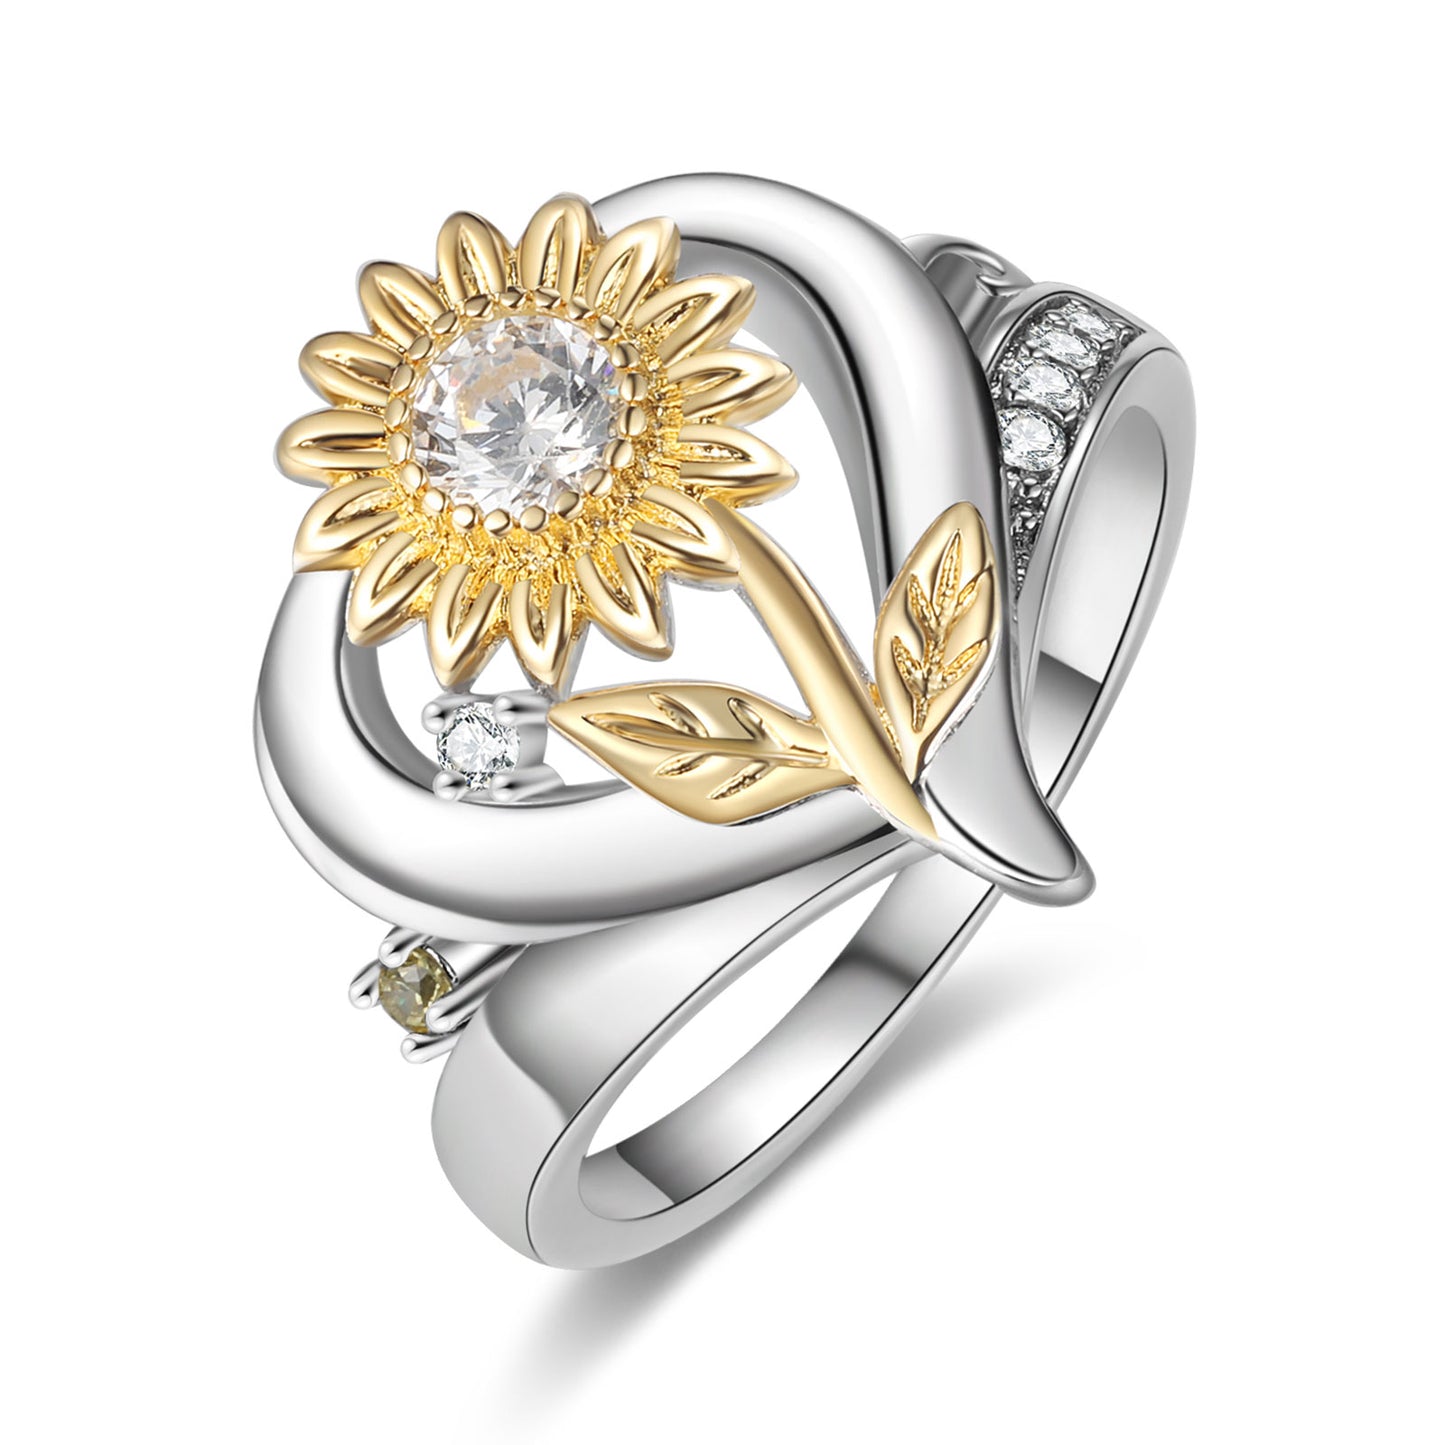 Custom Sunflower and Heart Ring